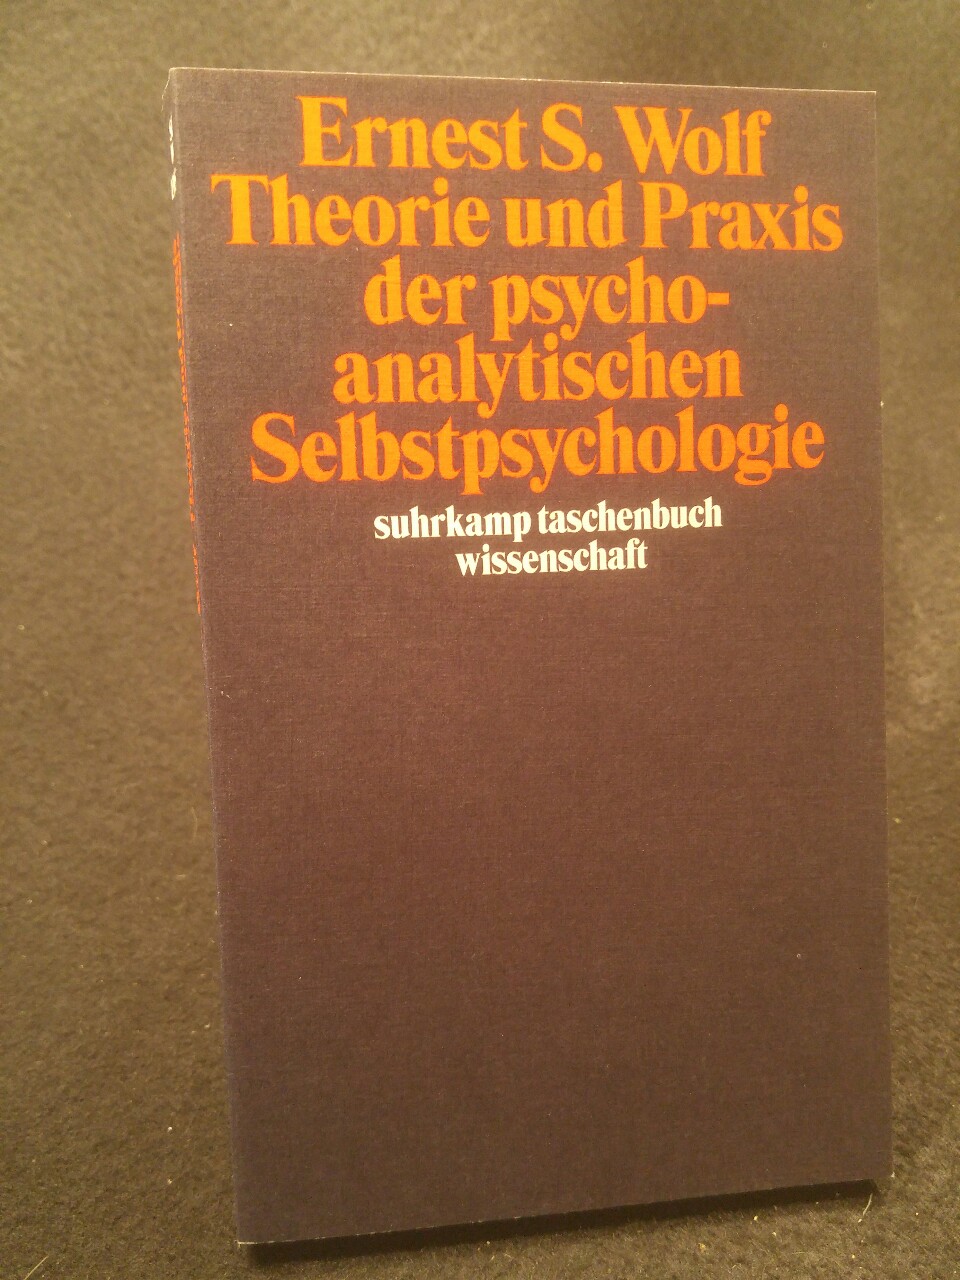 Theorie und Praxis der psychoanalytischen Selbstpsychologie [Neubuch] (suhrkamp taschenbuch wissenschaft) - Wolf, Ernest S. und Iris Hilke